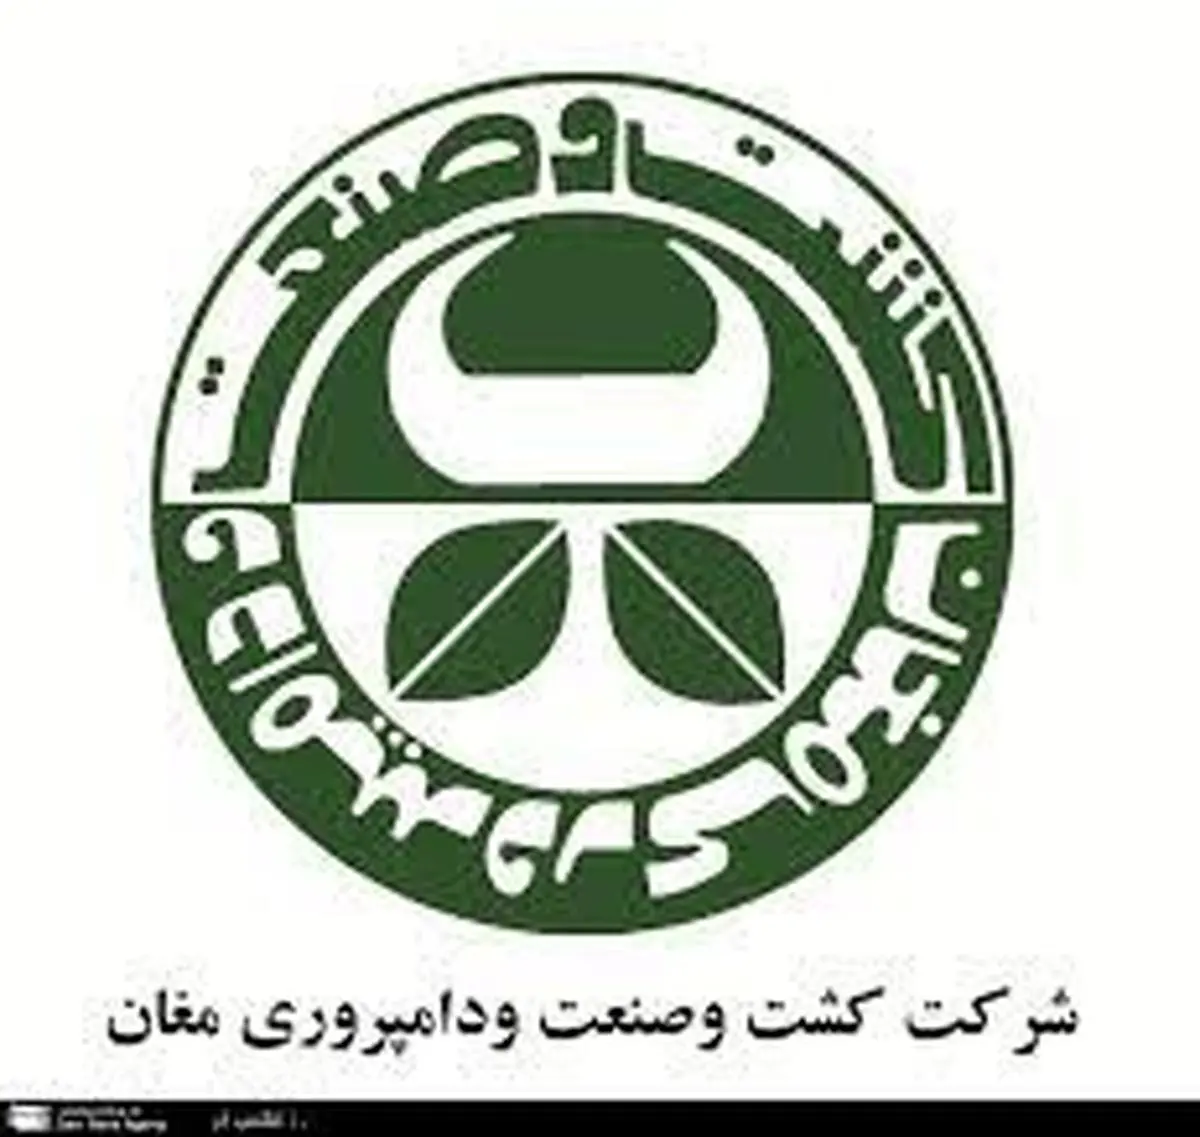 تلاش های شائبه برانگیز استاندار اردبیل در قامت مدافع تمام عیار خریدار فعلی شرکت کشت و صنعت مغان
